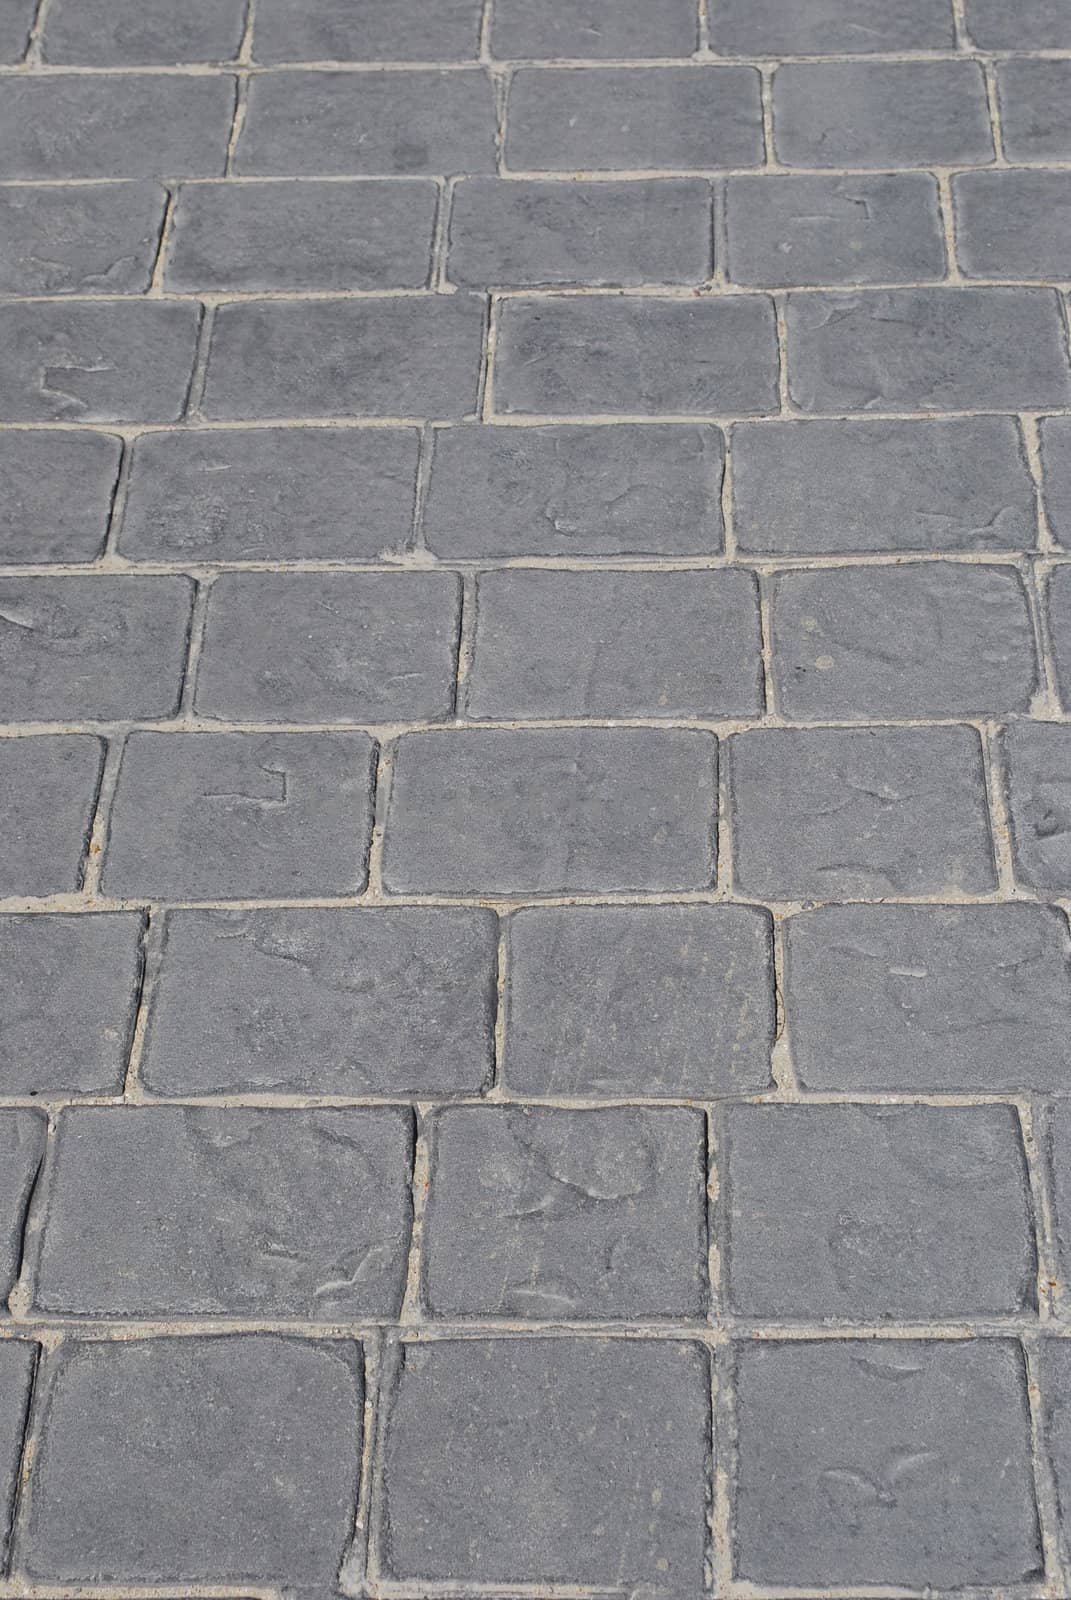 pavement made of rectangular granite stones